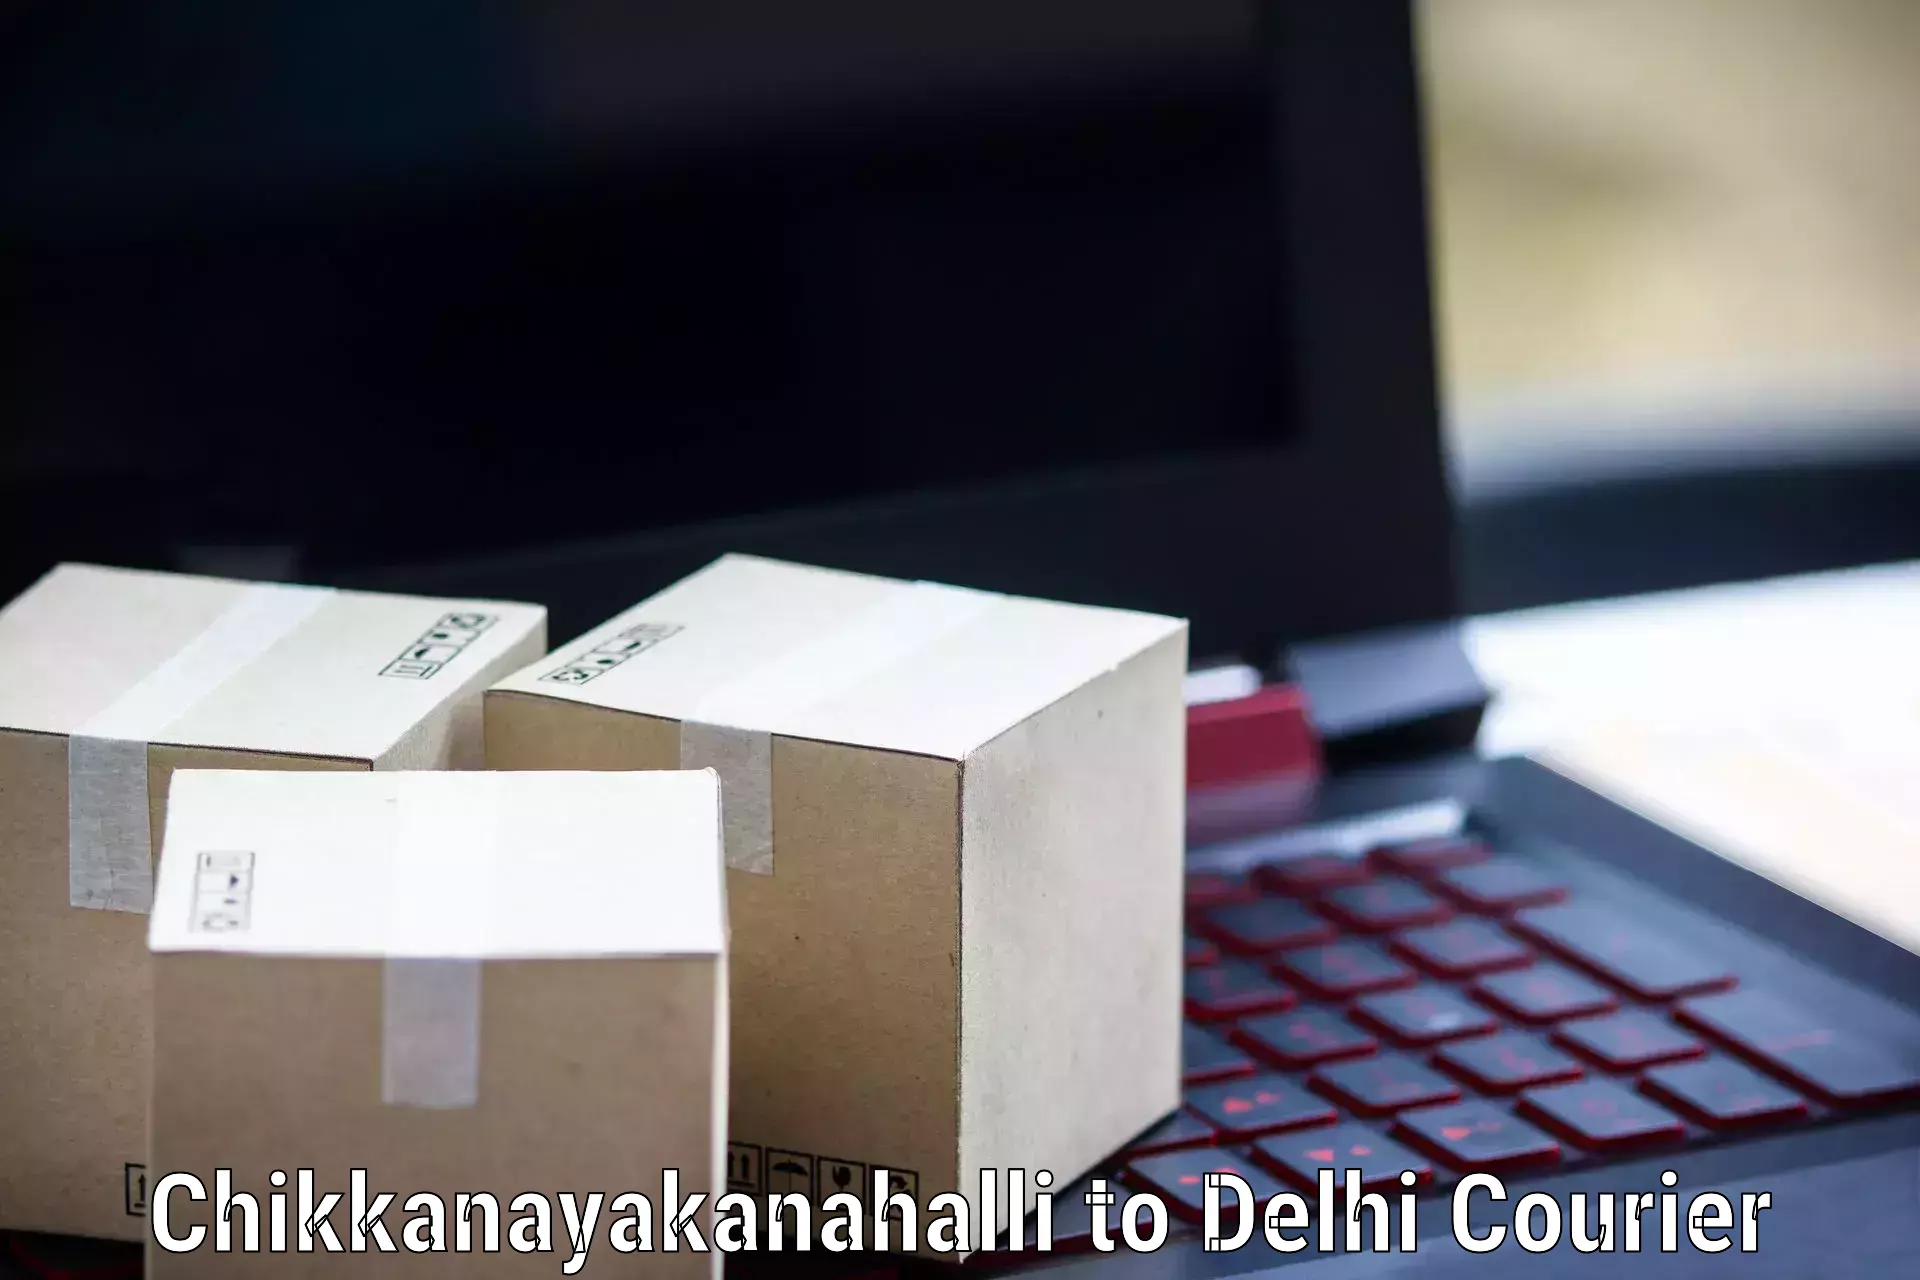 Global courier networks Chikkanayakanahalli to Krishna Nagar